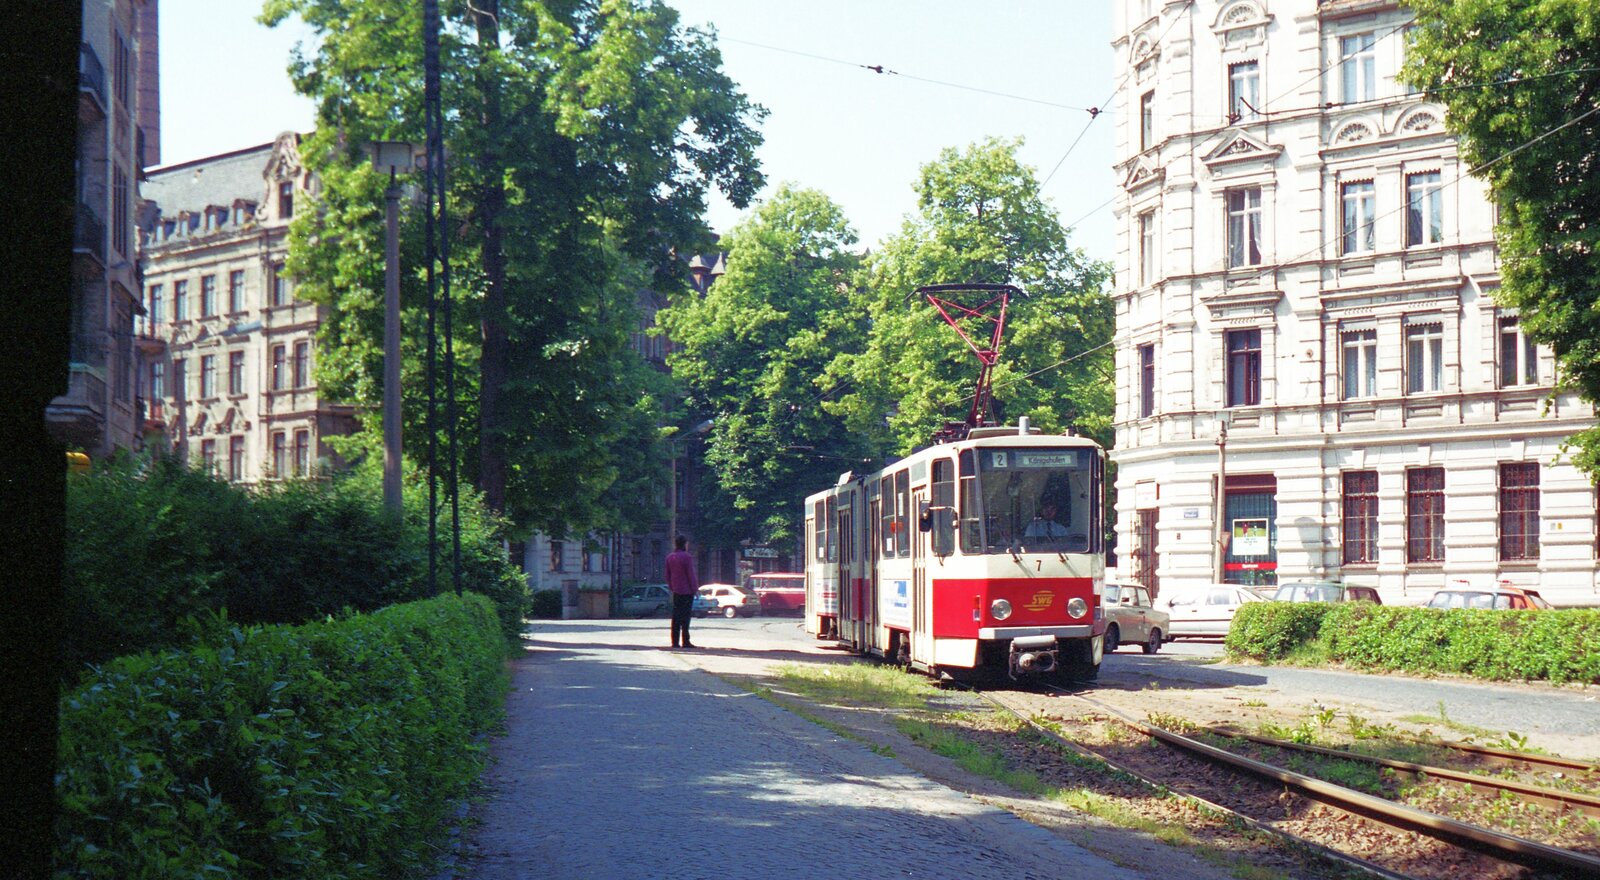 Straßenbahn Görlitz, Niederschlesien__Tw 7 [KT4D-C; ČKD Tatra, 1987; +2010] auf Linie 2 von Biesnitz kommend durchfährt gleich die Grünanlage des Sechs-Städte-Platzes.__28-06-1992 